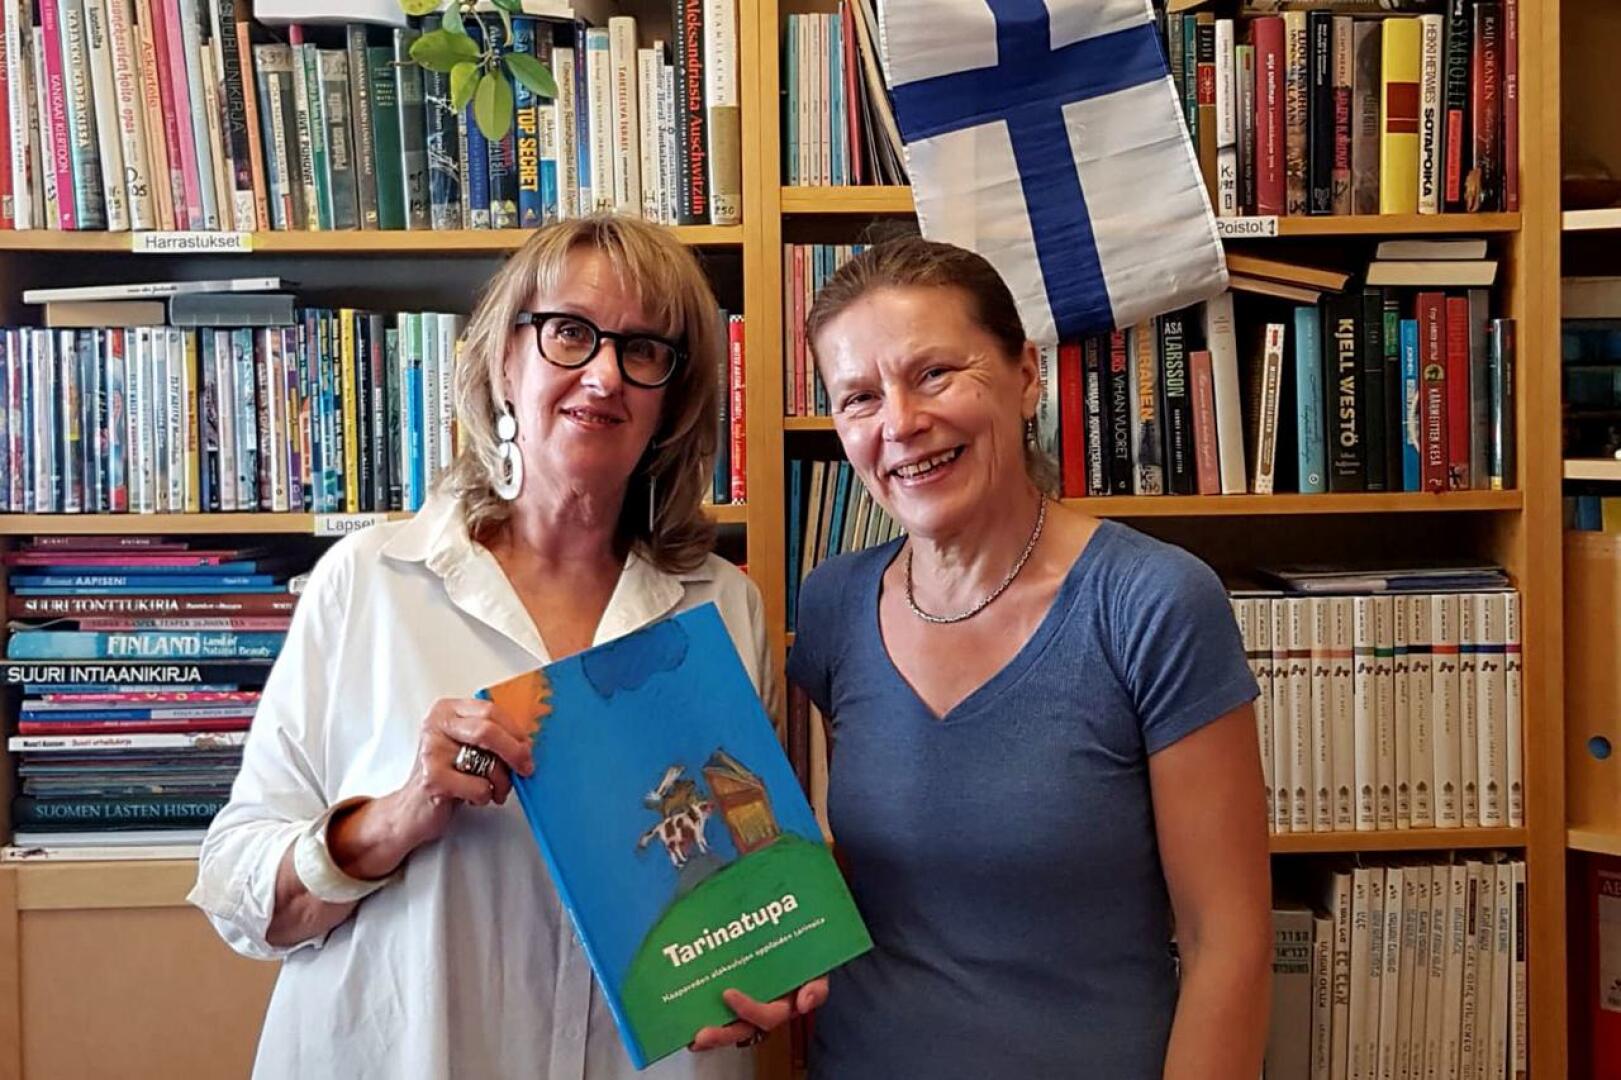 Kirjastonhoitaja Anu Morchy Levi (oikealla) otti ilolla vastaan Tarinatupa -kirjan, jonka Anneli Repo toi terveisinä Haapaveden kirjastolta Israelin Suomi-kirjastoon.